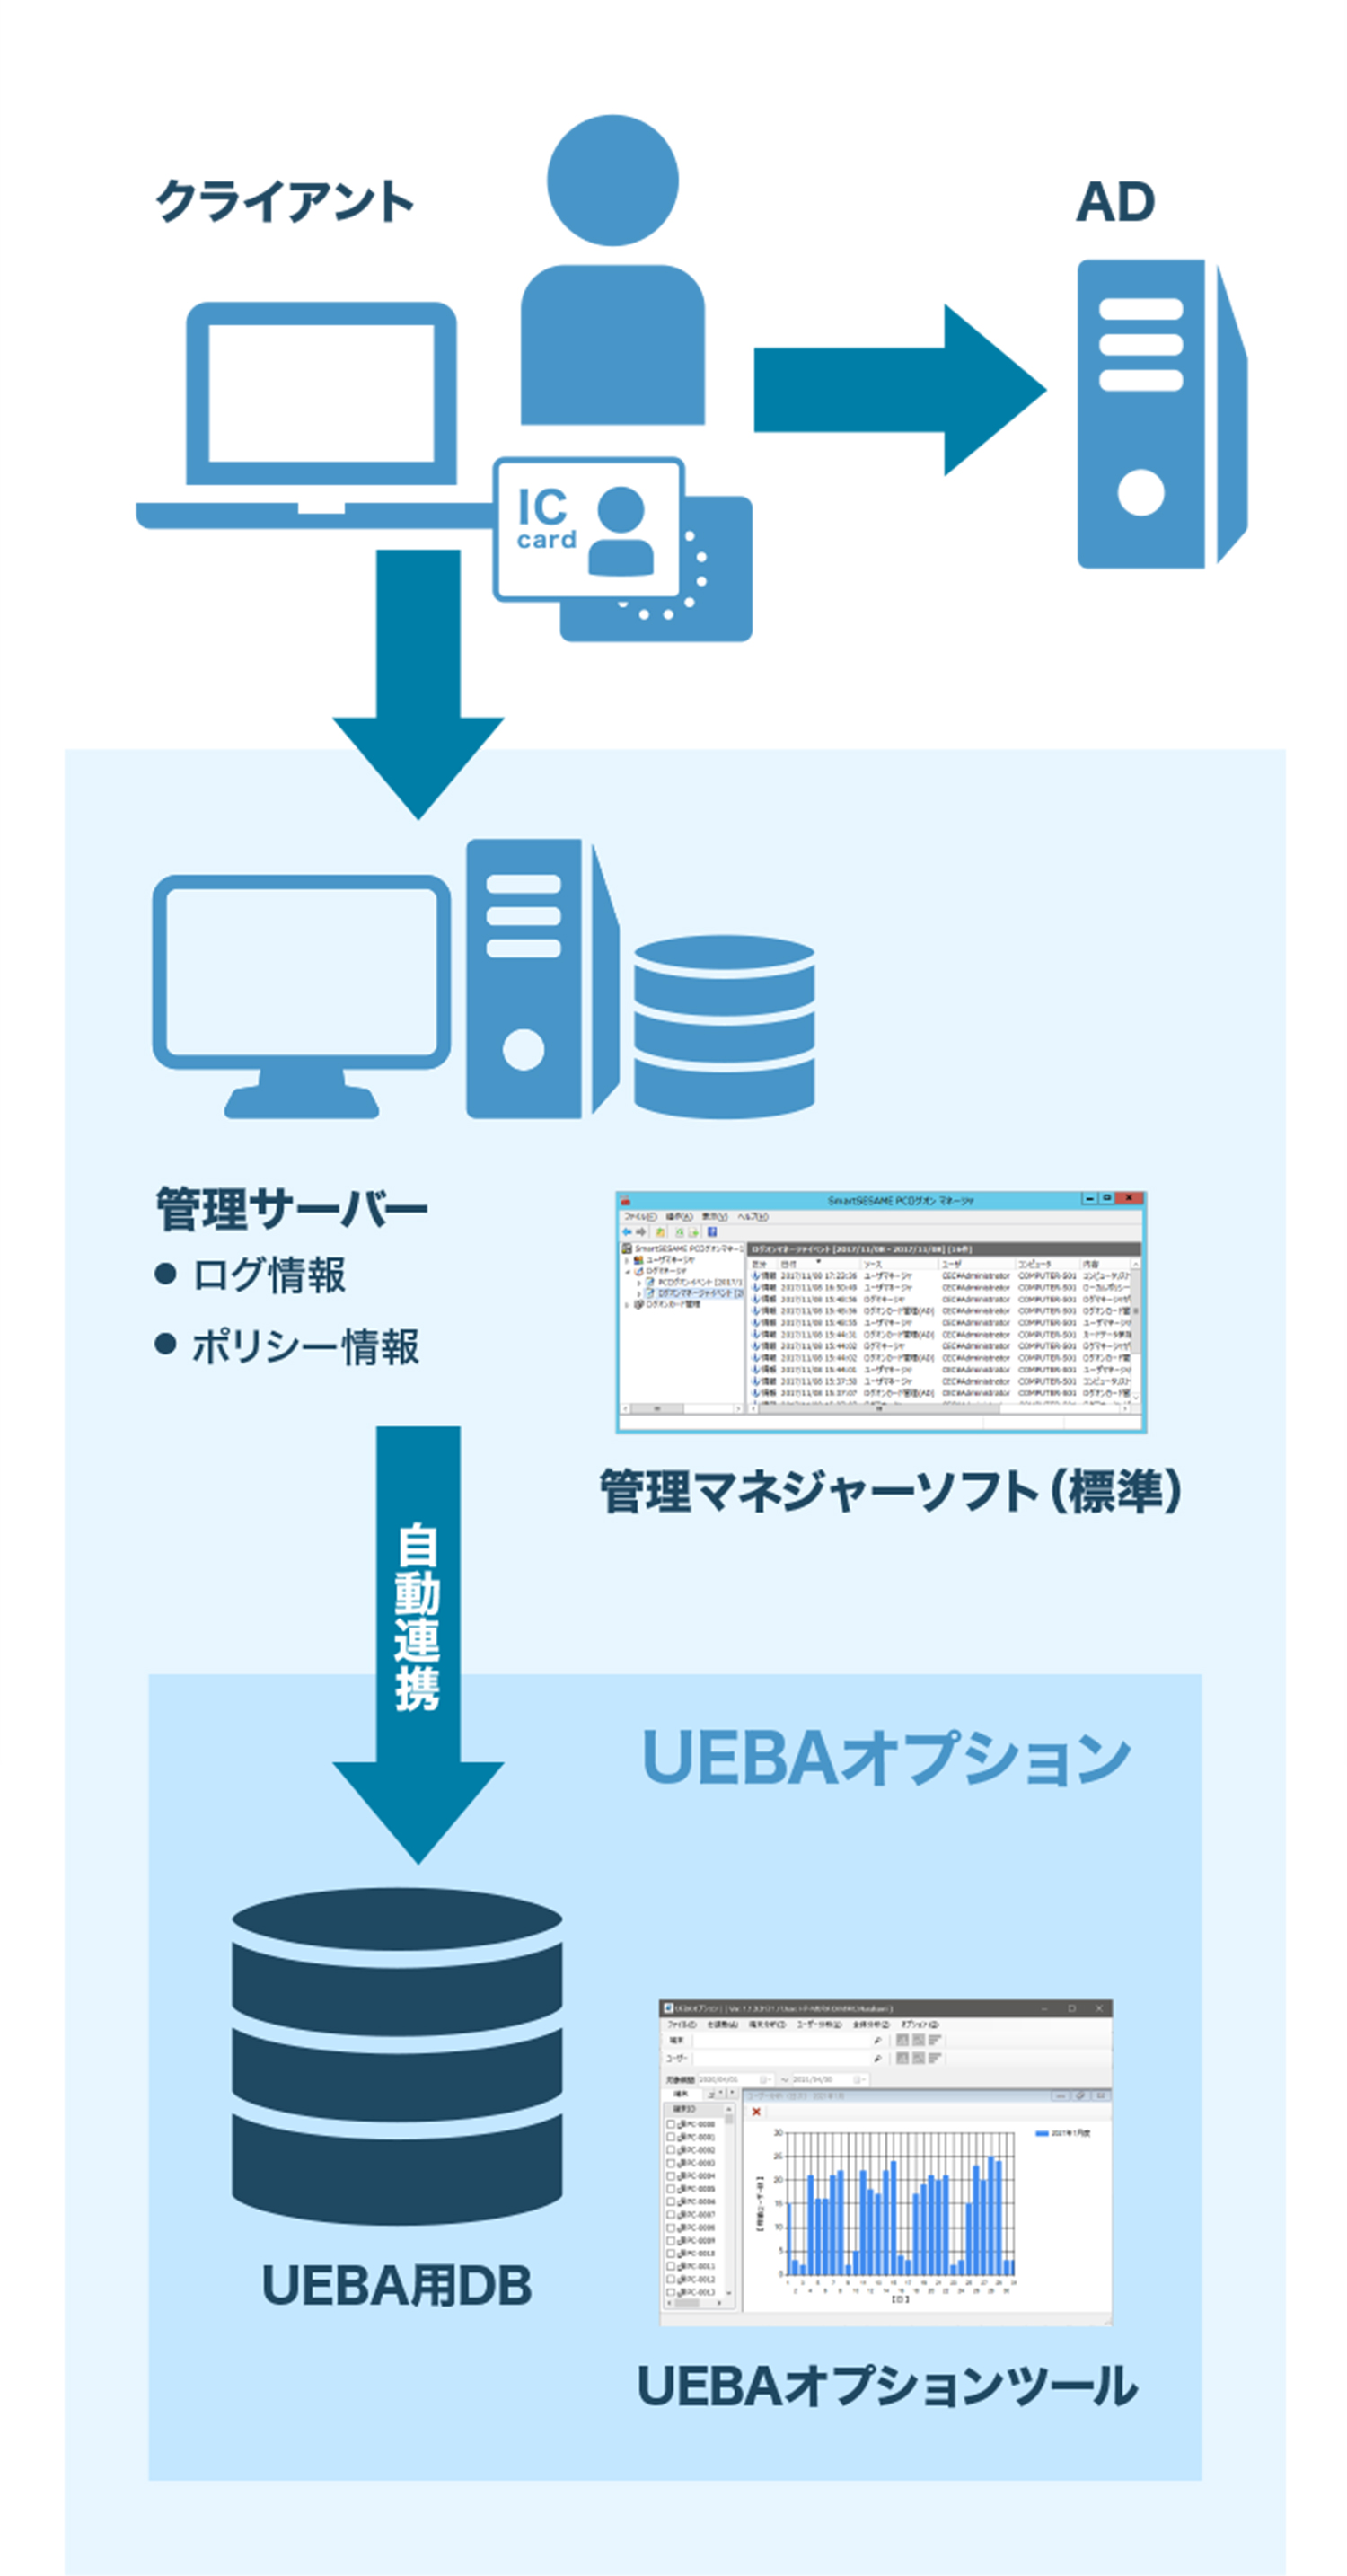 UEBAオプション システム構成